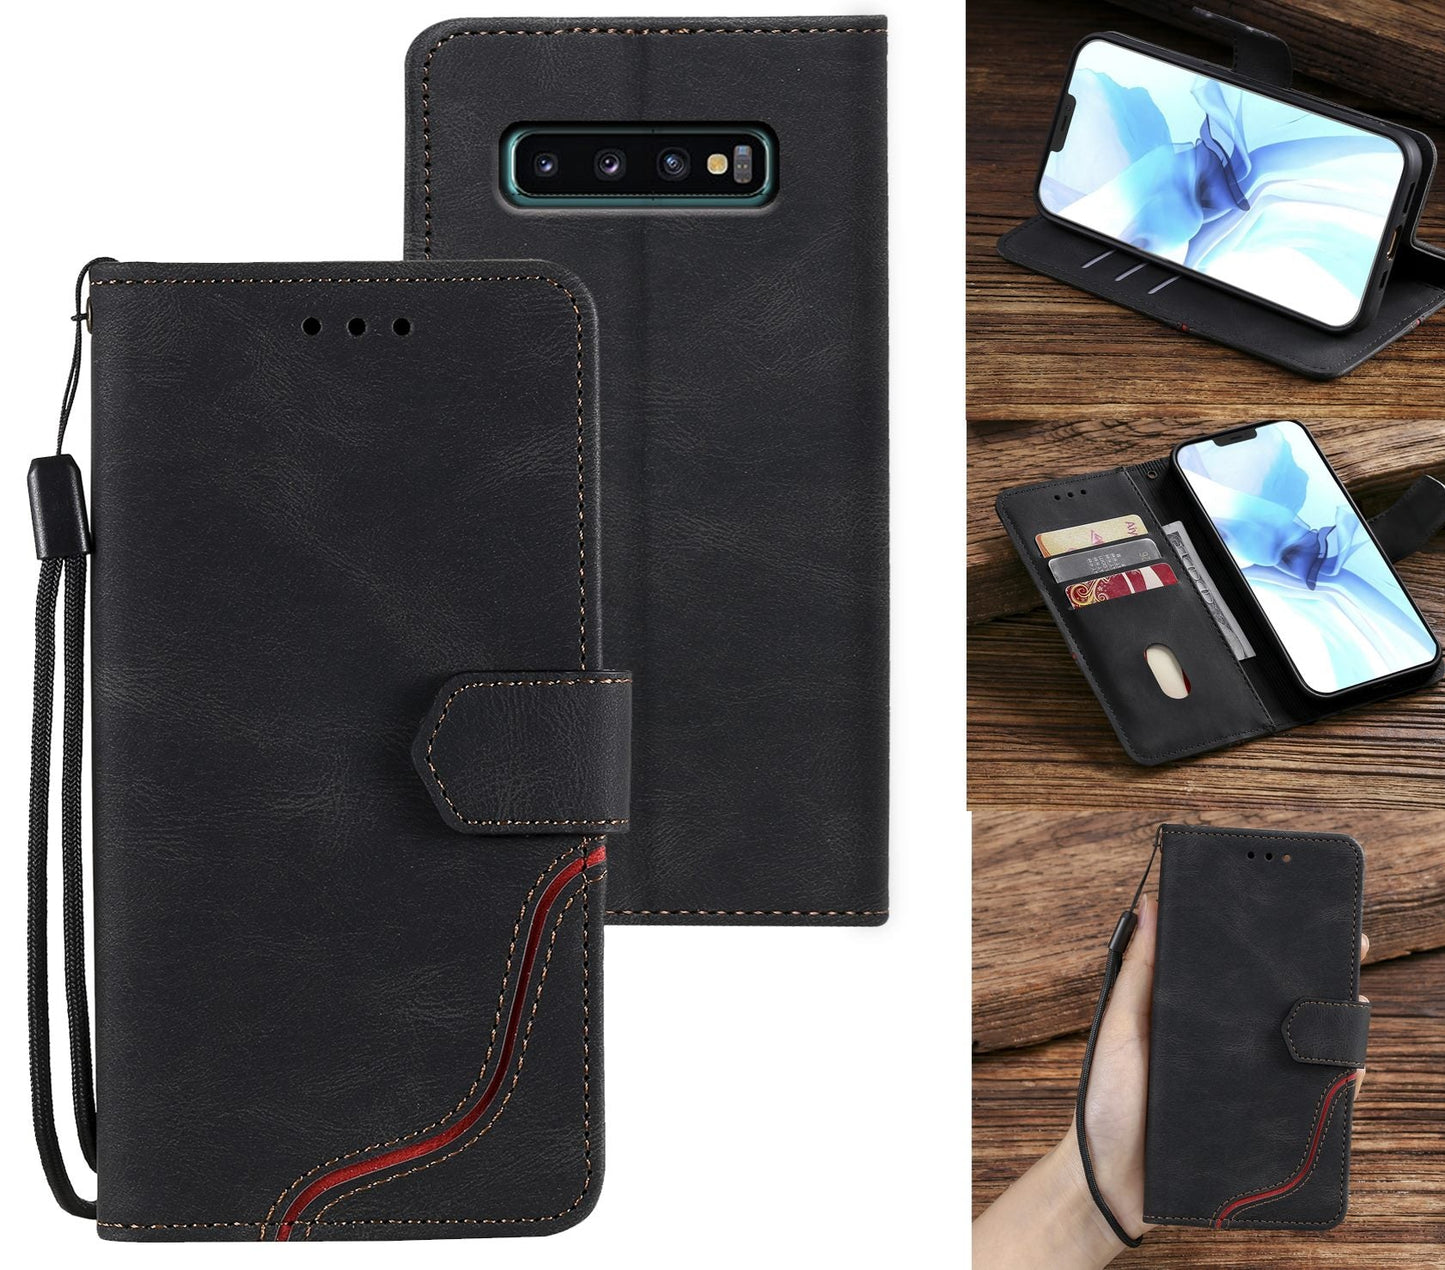 Samsung Galaxy S10 Case Wallet Cover Black